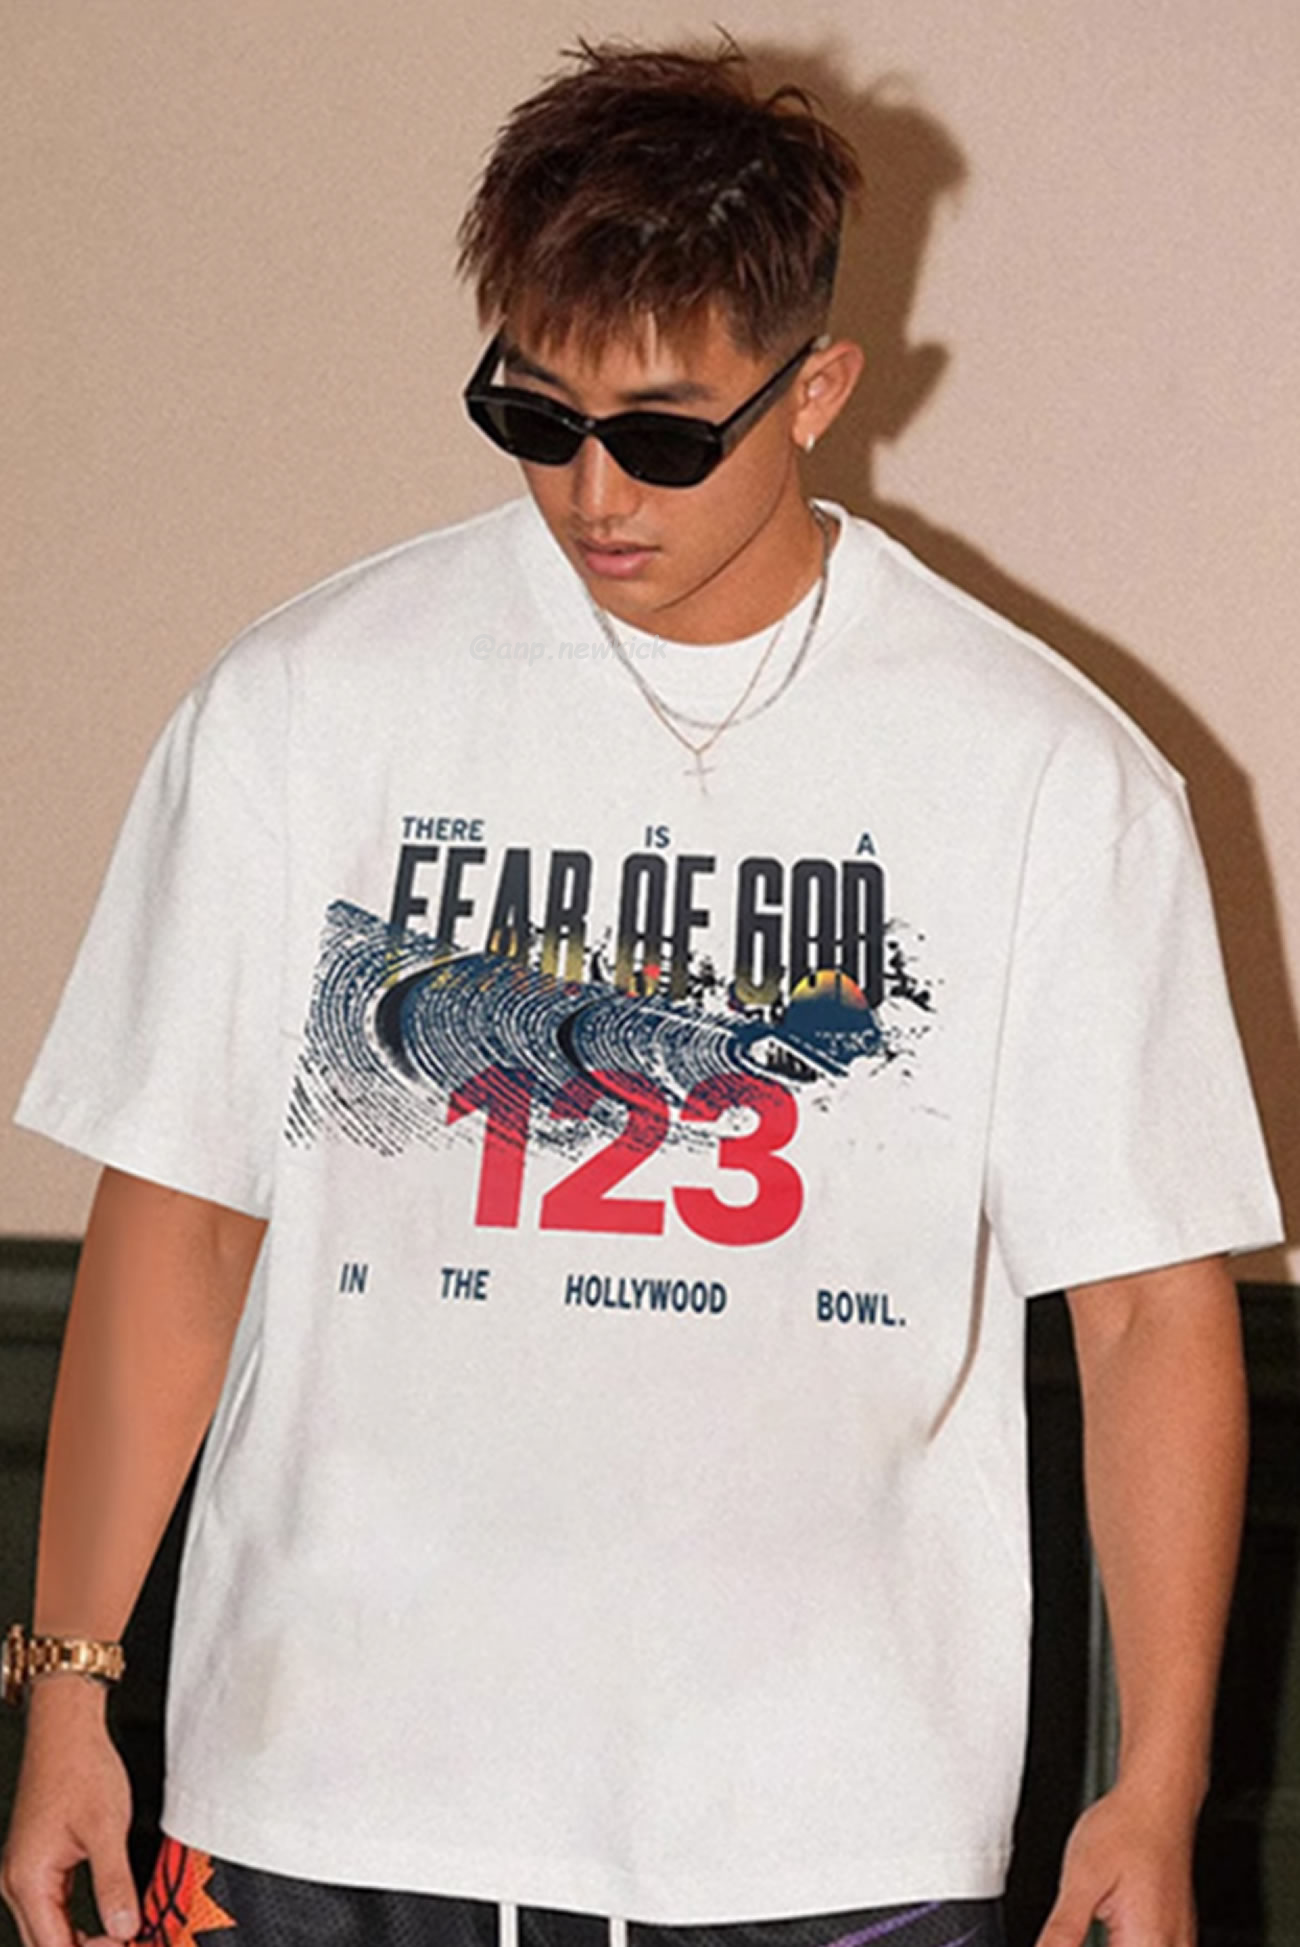 Fear Of God X Rrr 123 Co Branded Letter Printed Short Sleeve T Shirt White (2) - newkick.org